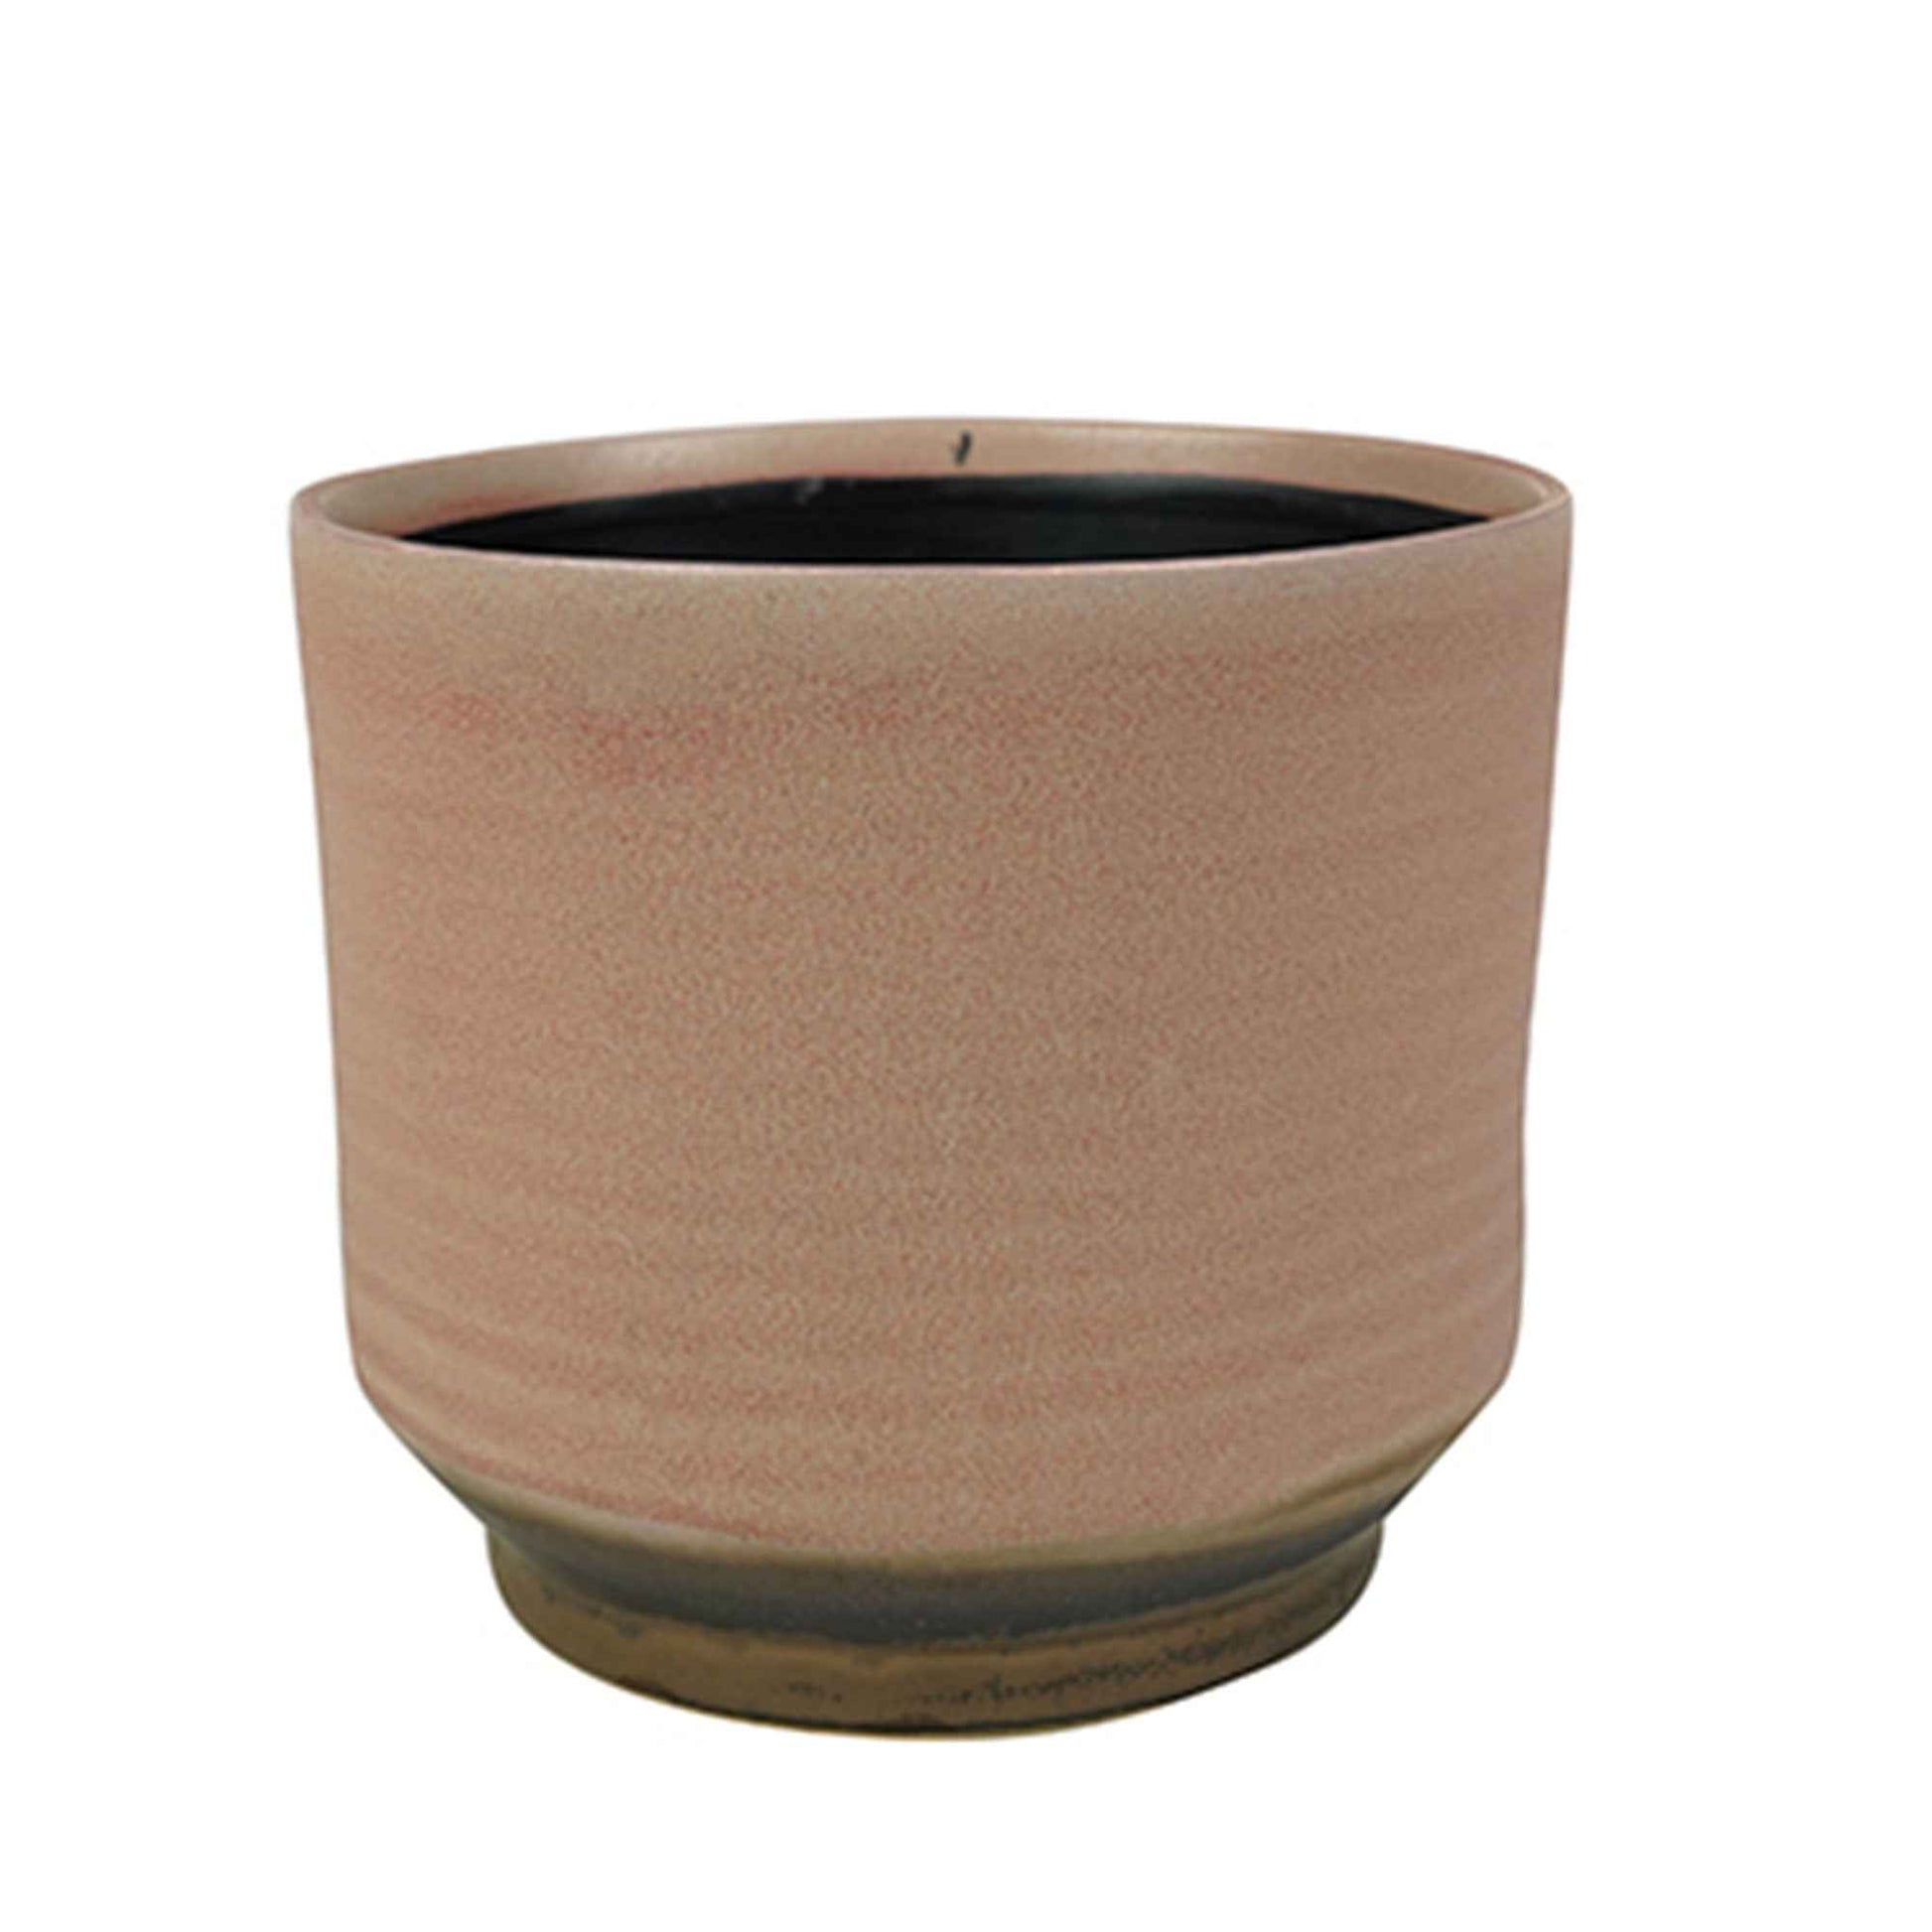 TS pot de fleurs Suze rond rose - Pot pour l'intérieur - Pots de fleurs en céramique et terre cuite